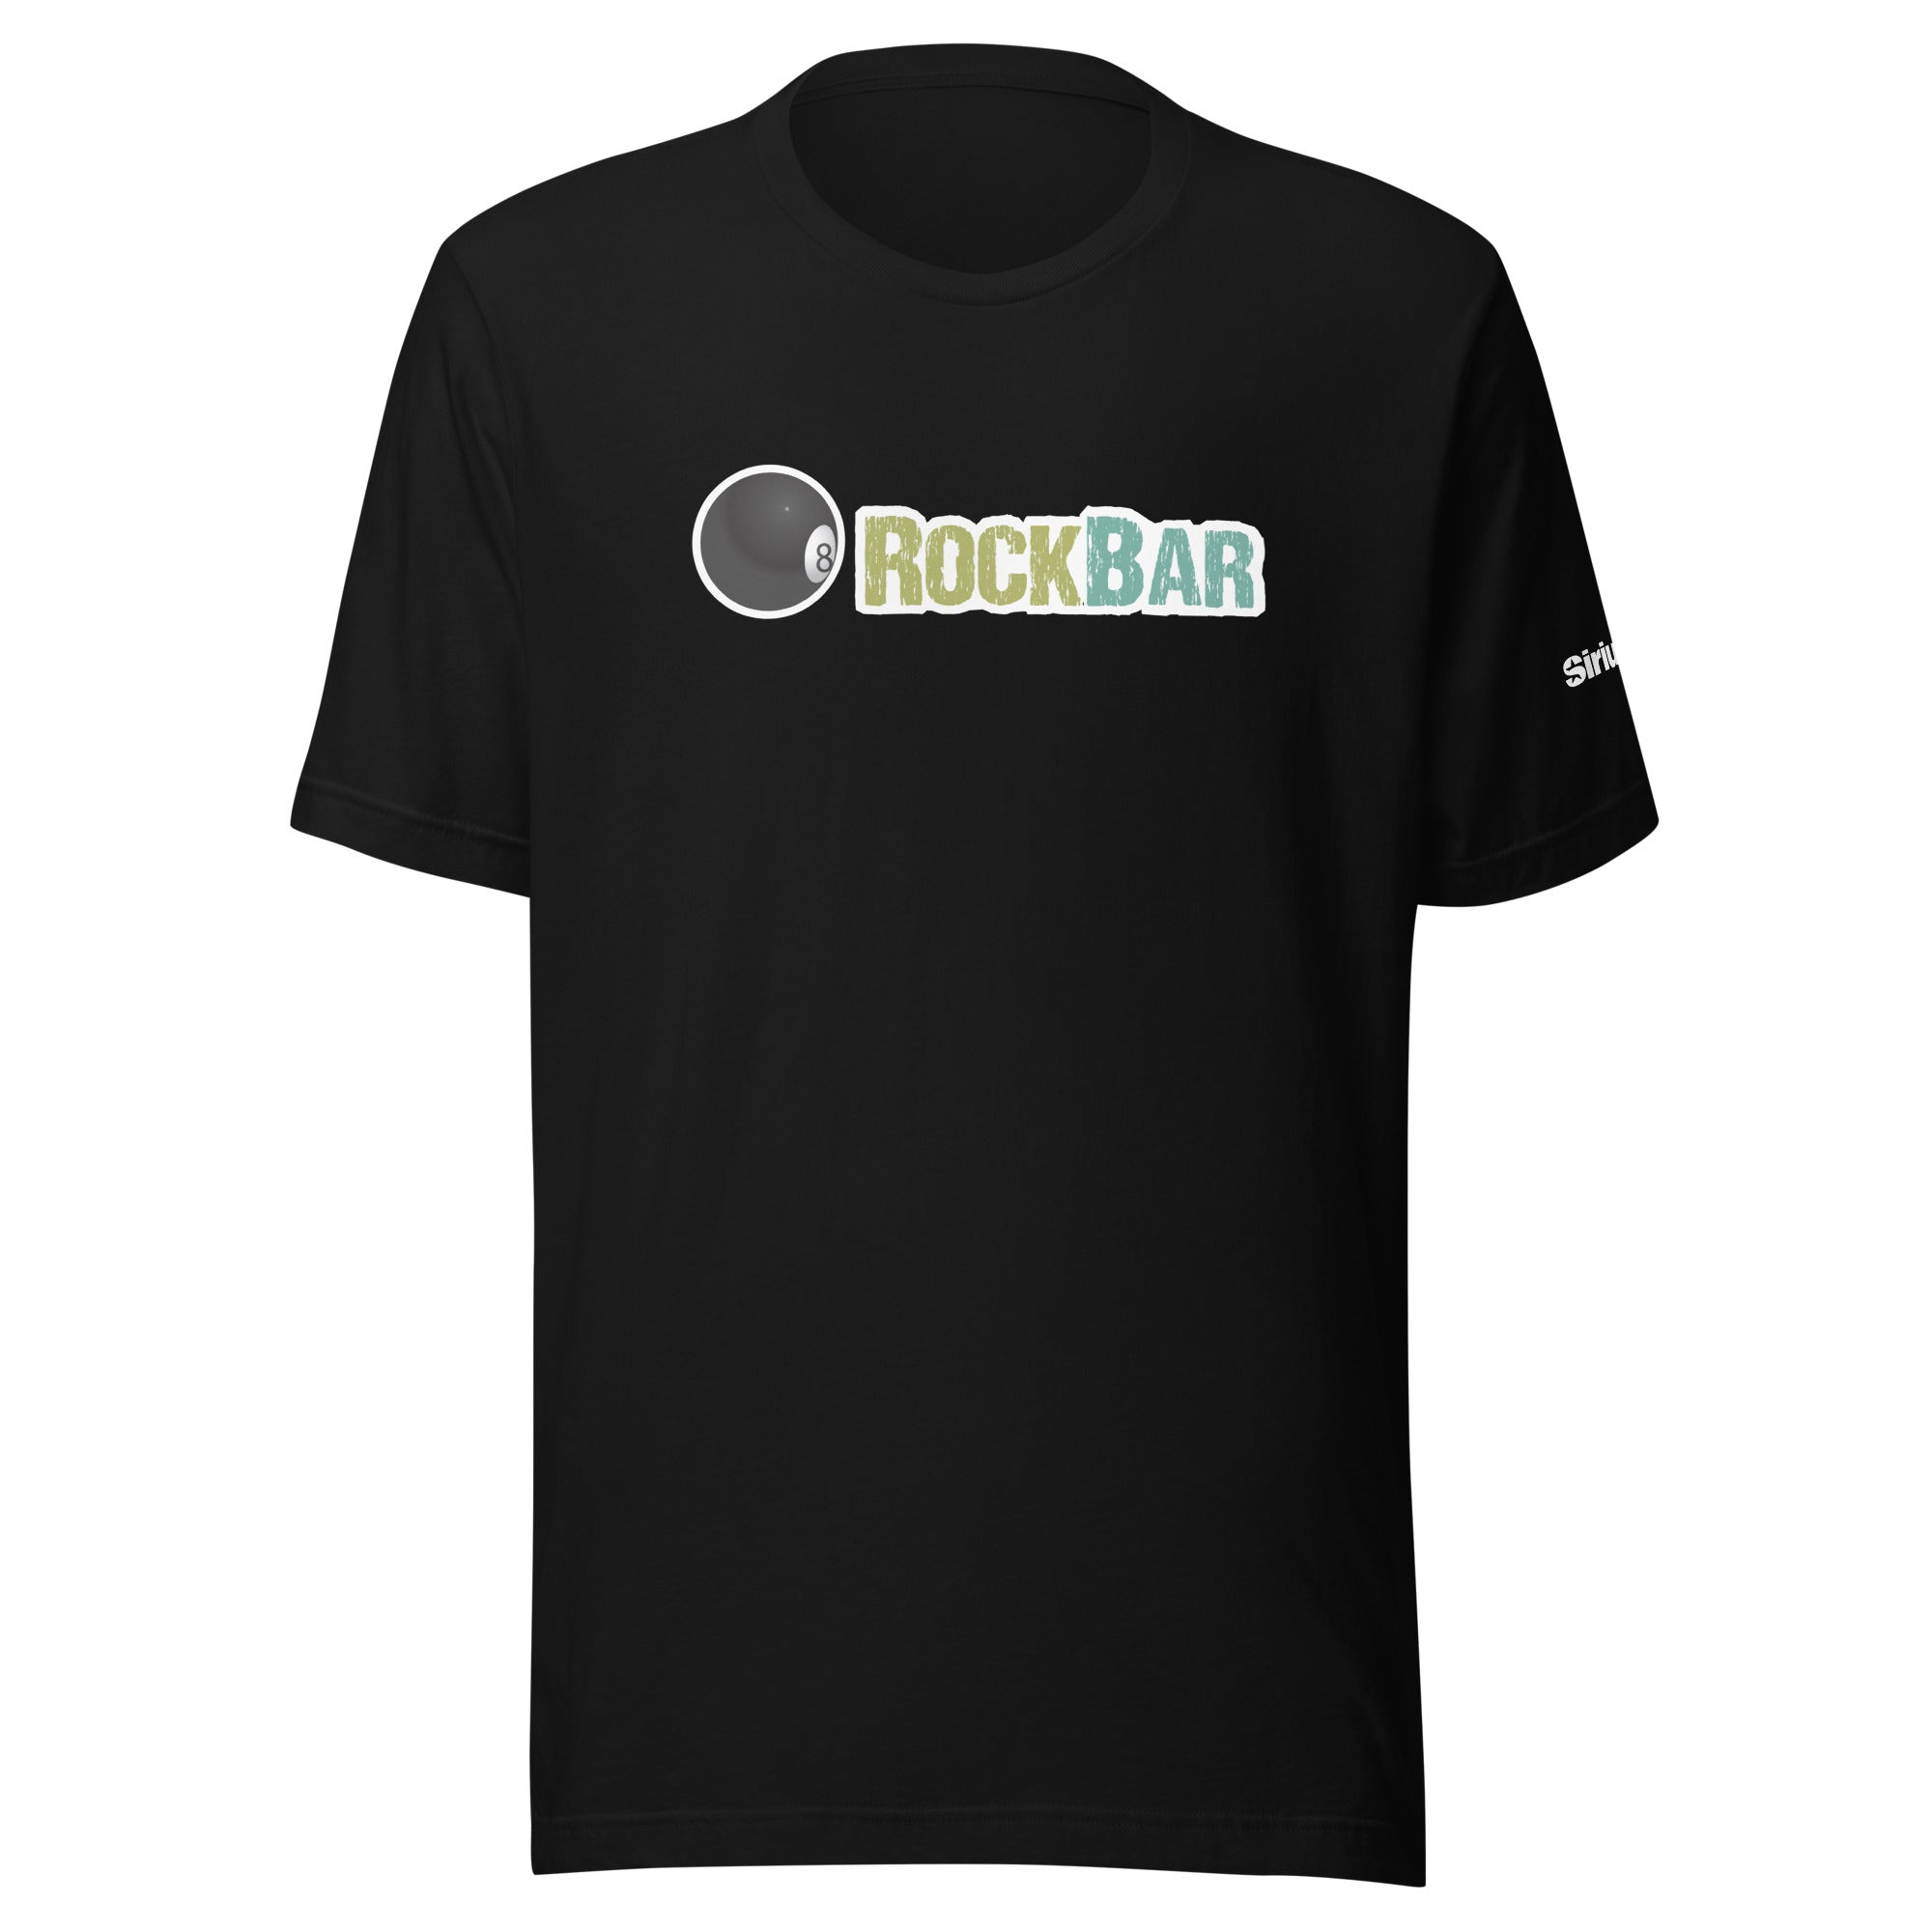 RockBar: T-shirt (Black)